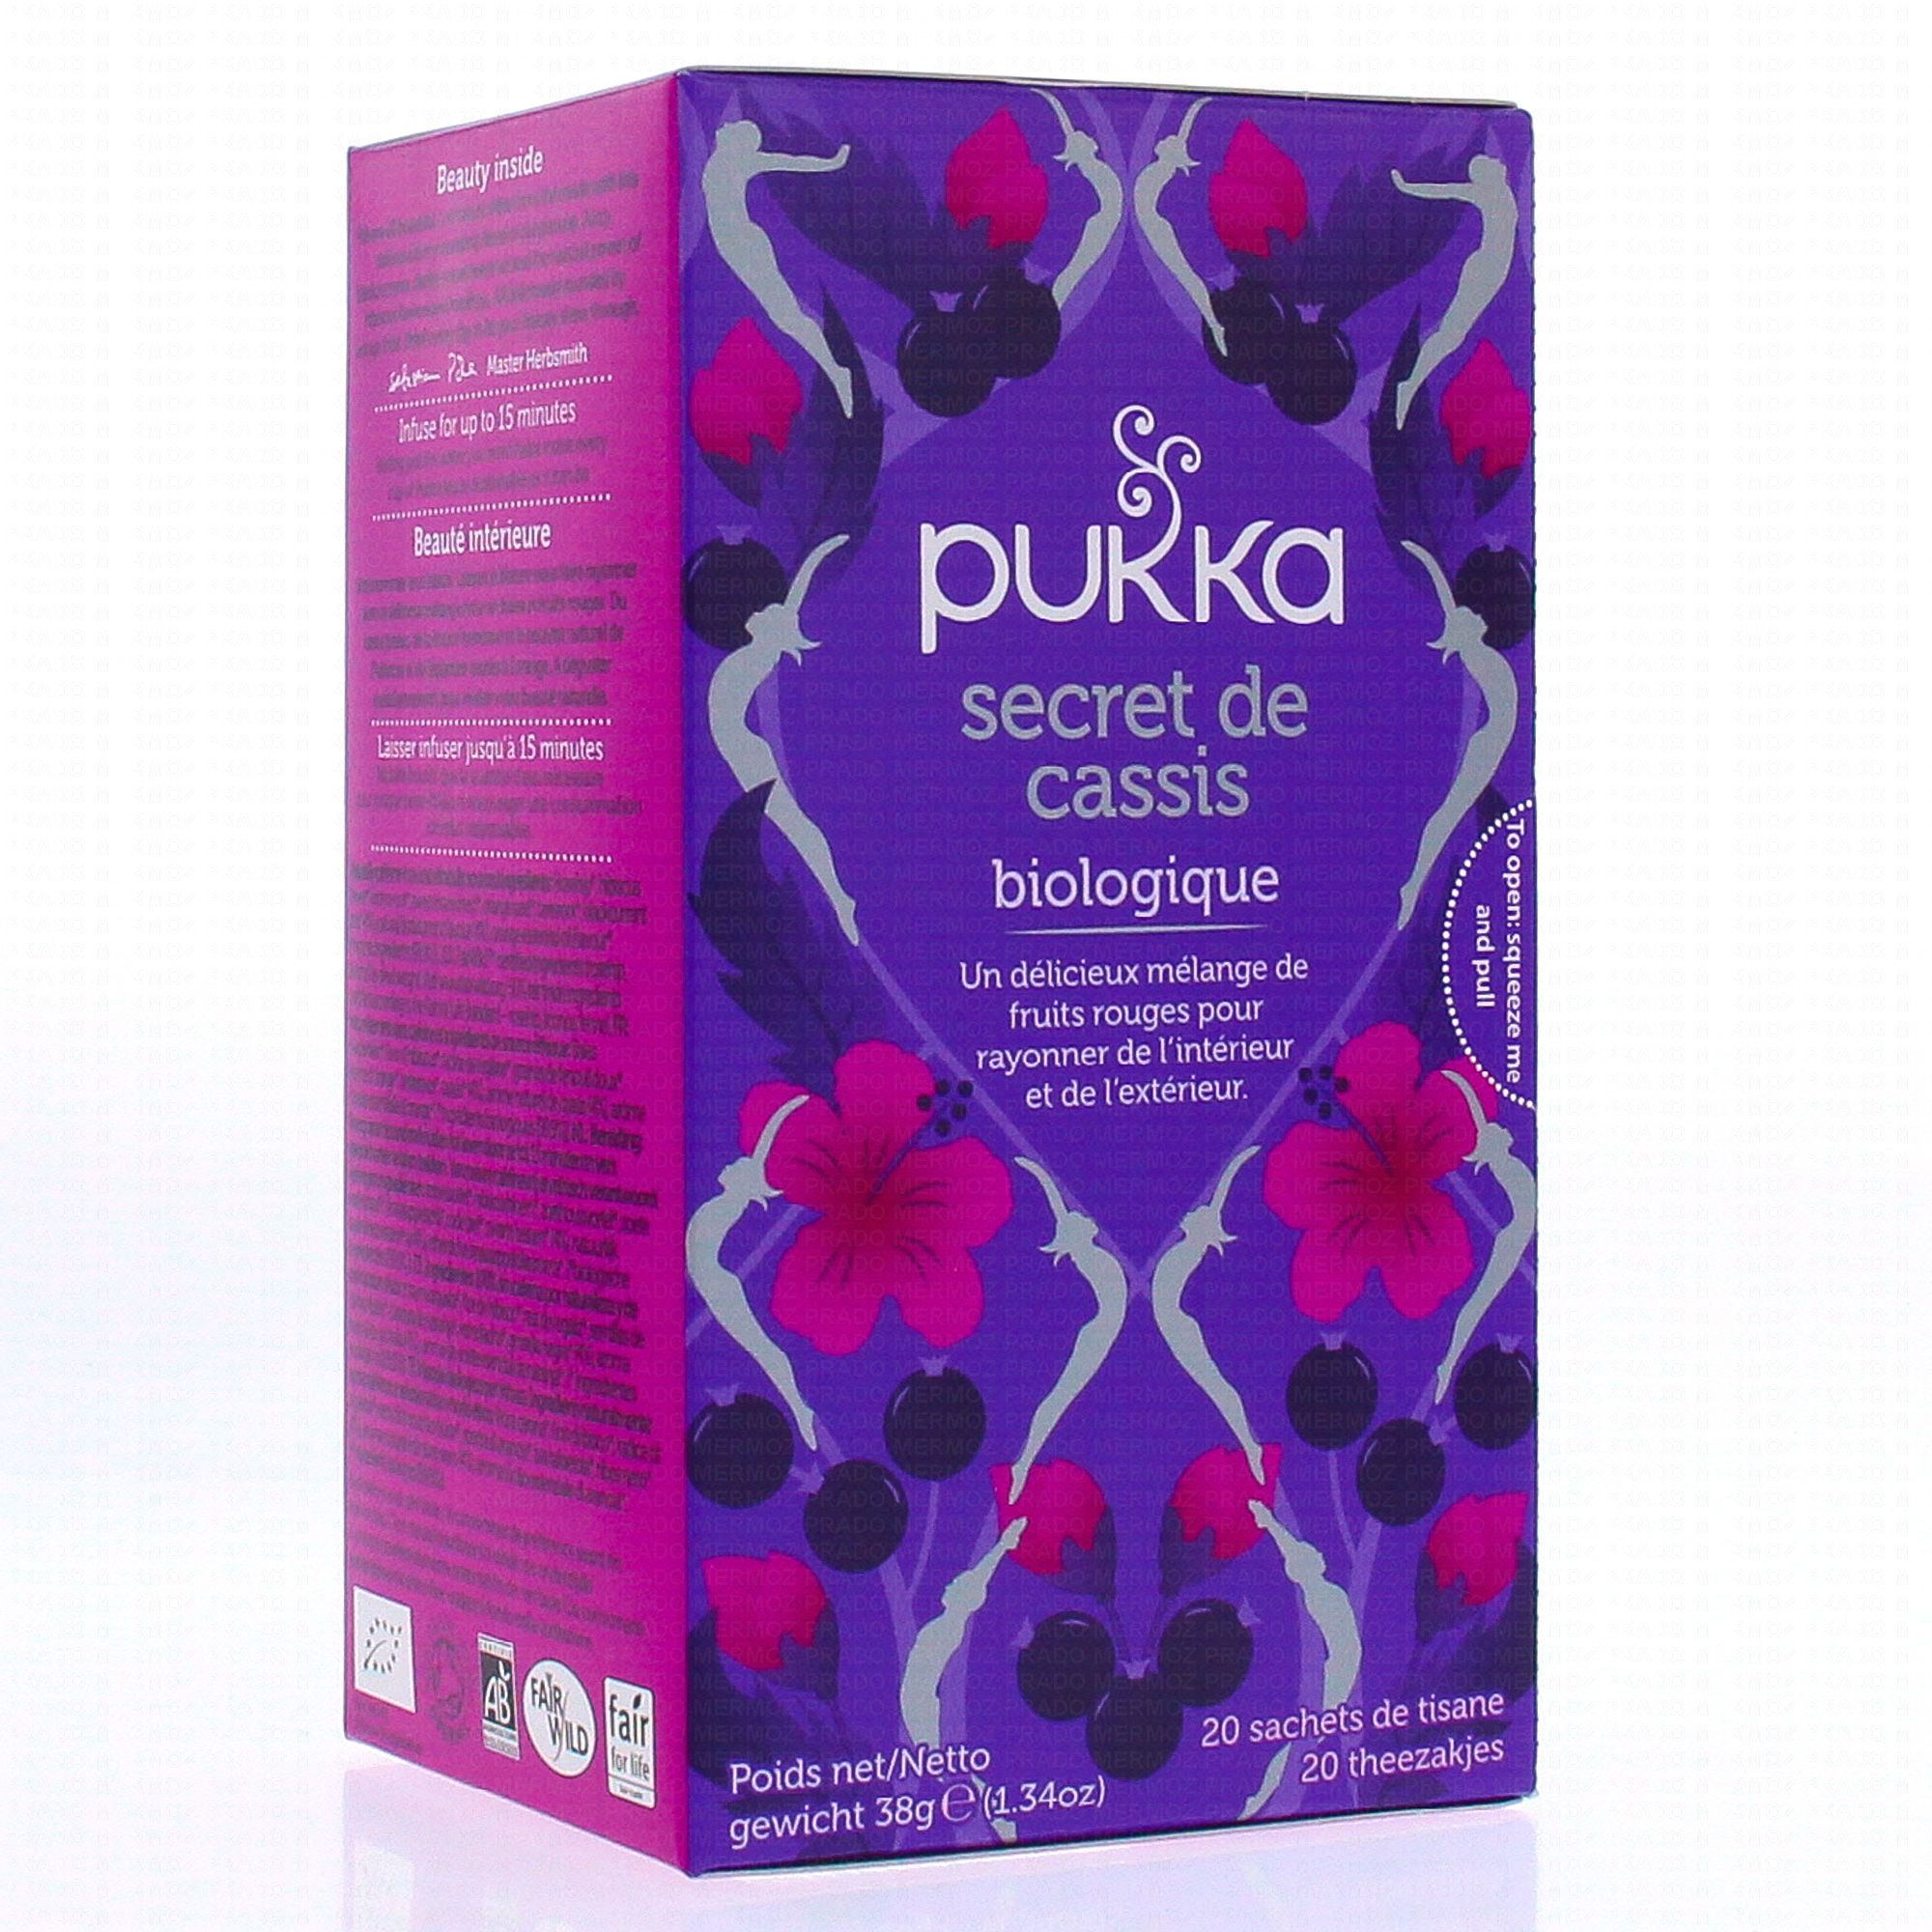 PUKKA Tisane Fell new biologique x20 sachets - Parapharmacie Prado